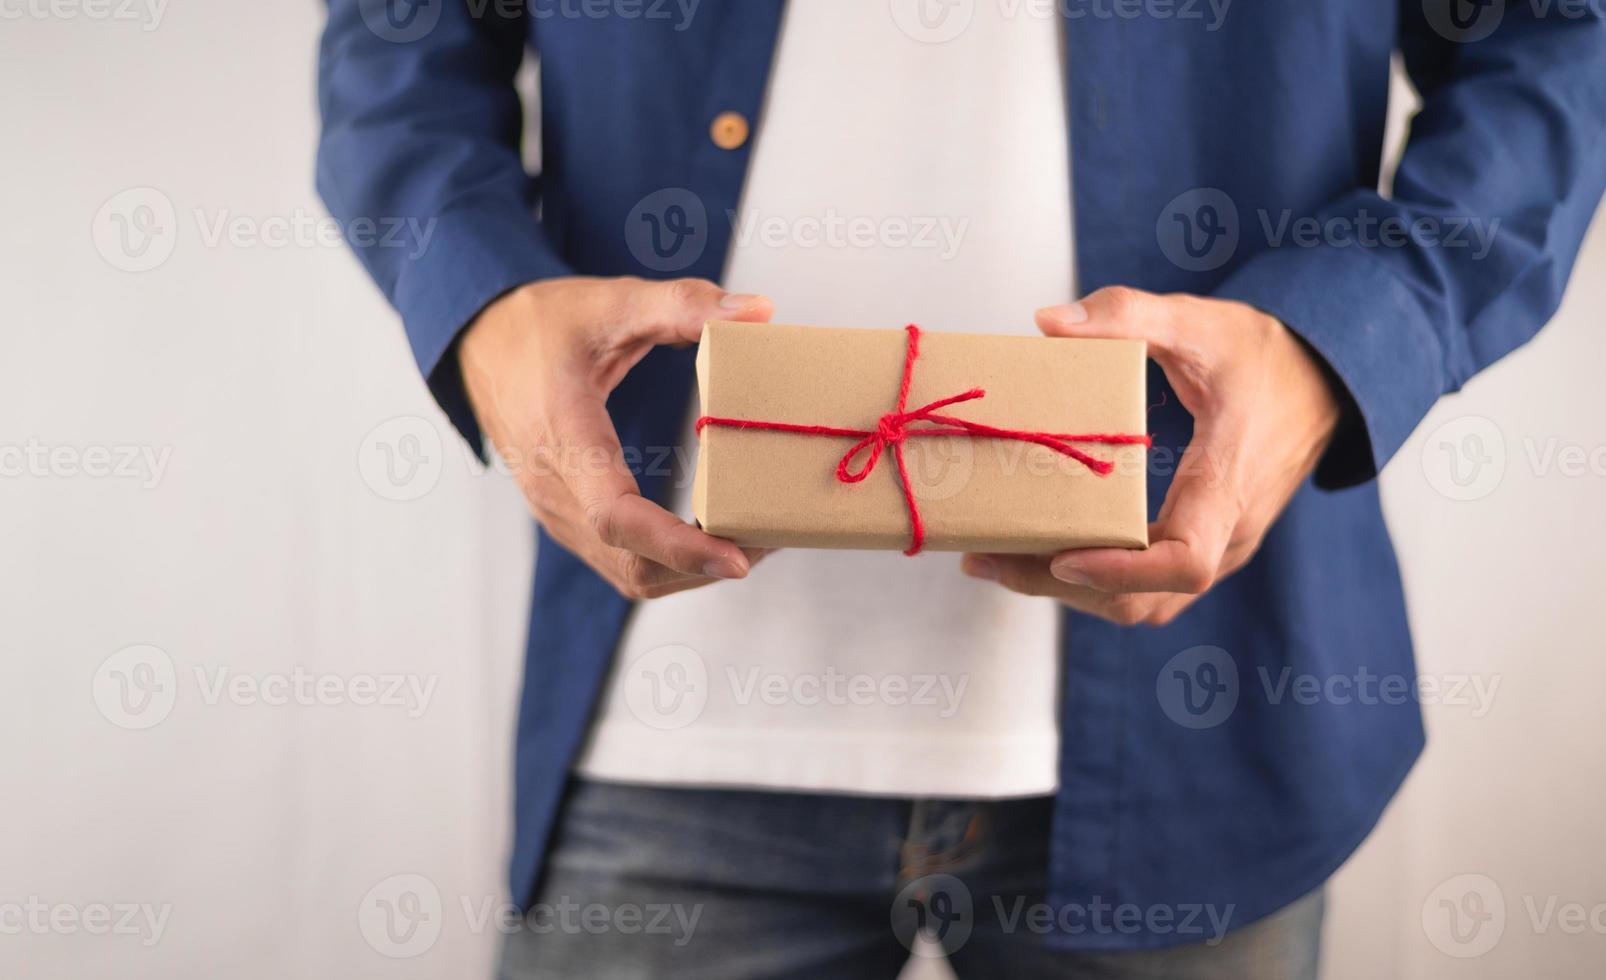 primer plano de la mano que sostiene la caja de regalo, caja de regalo de año nuevo, caja de regalo de Navidad, espacio de copia. Navidad, año nuevo, concepto de cumpleaños. foto